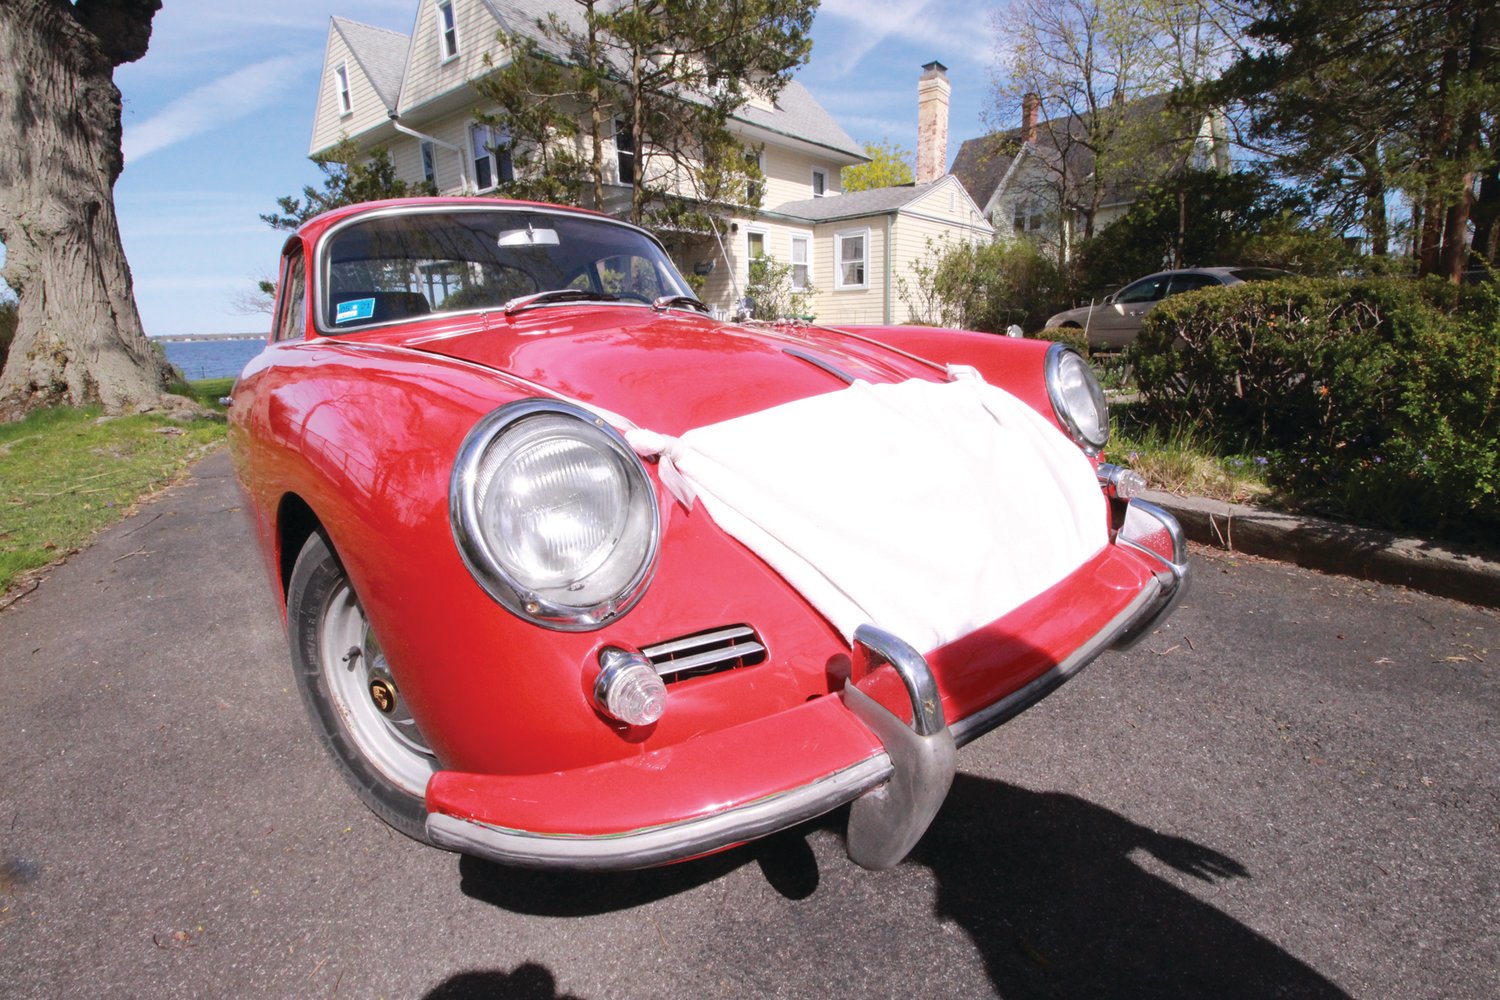 Even this vintage Porsche was masked